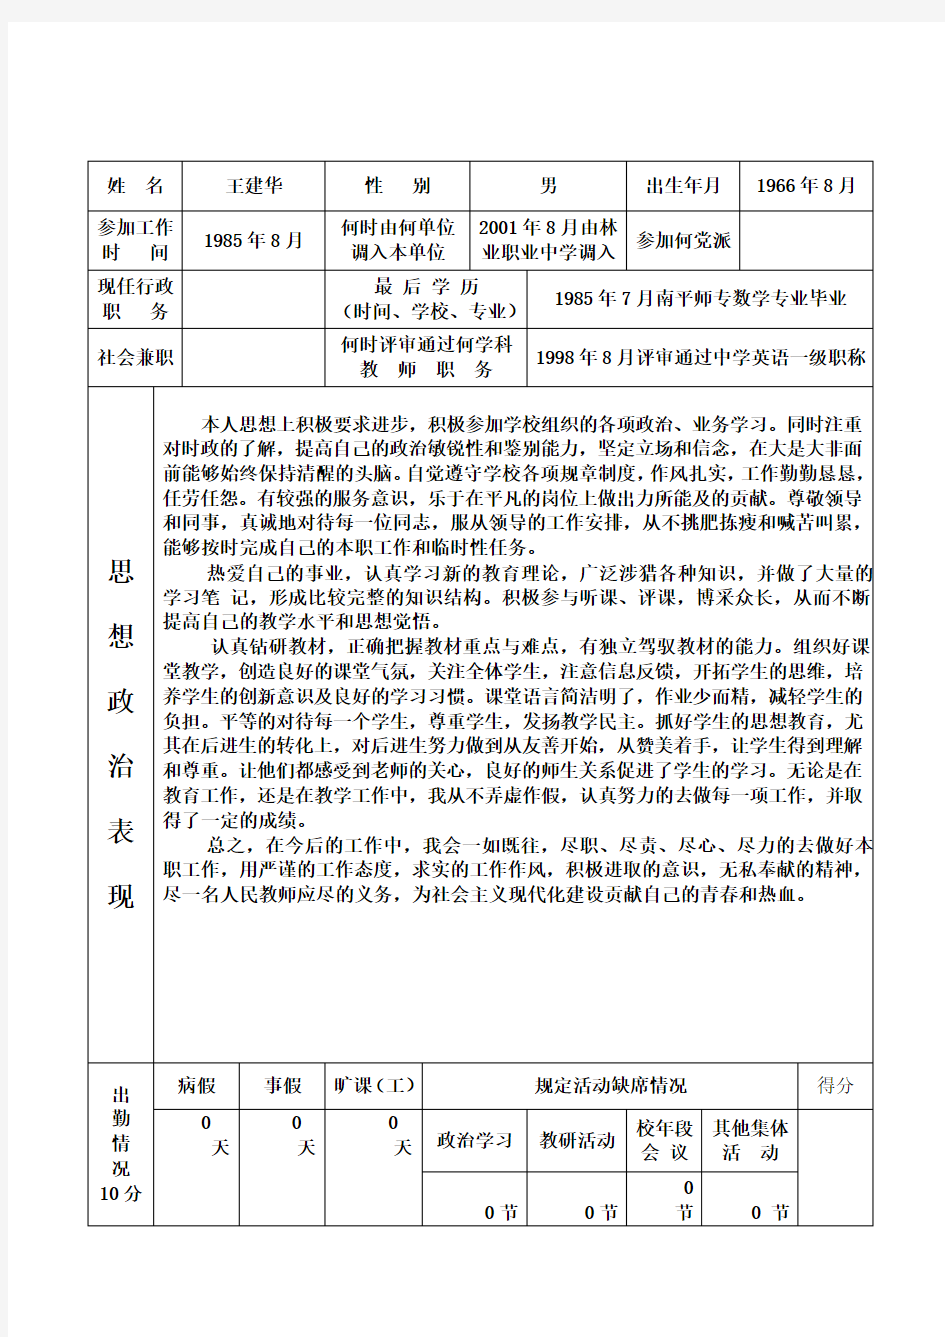 福建省中小学教师职务考评登记表(4)